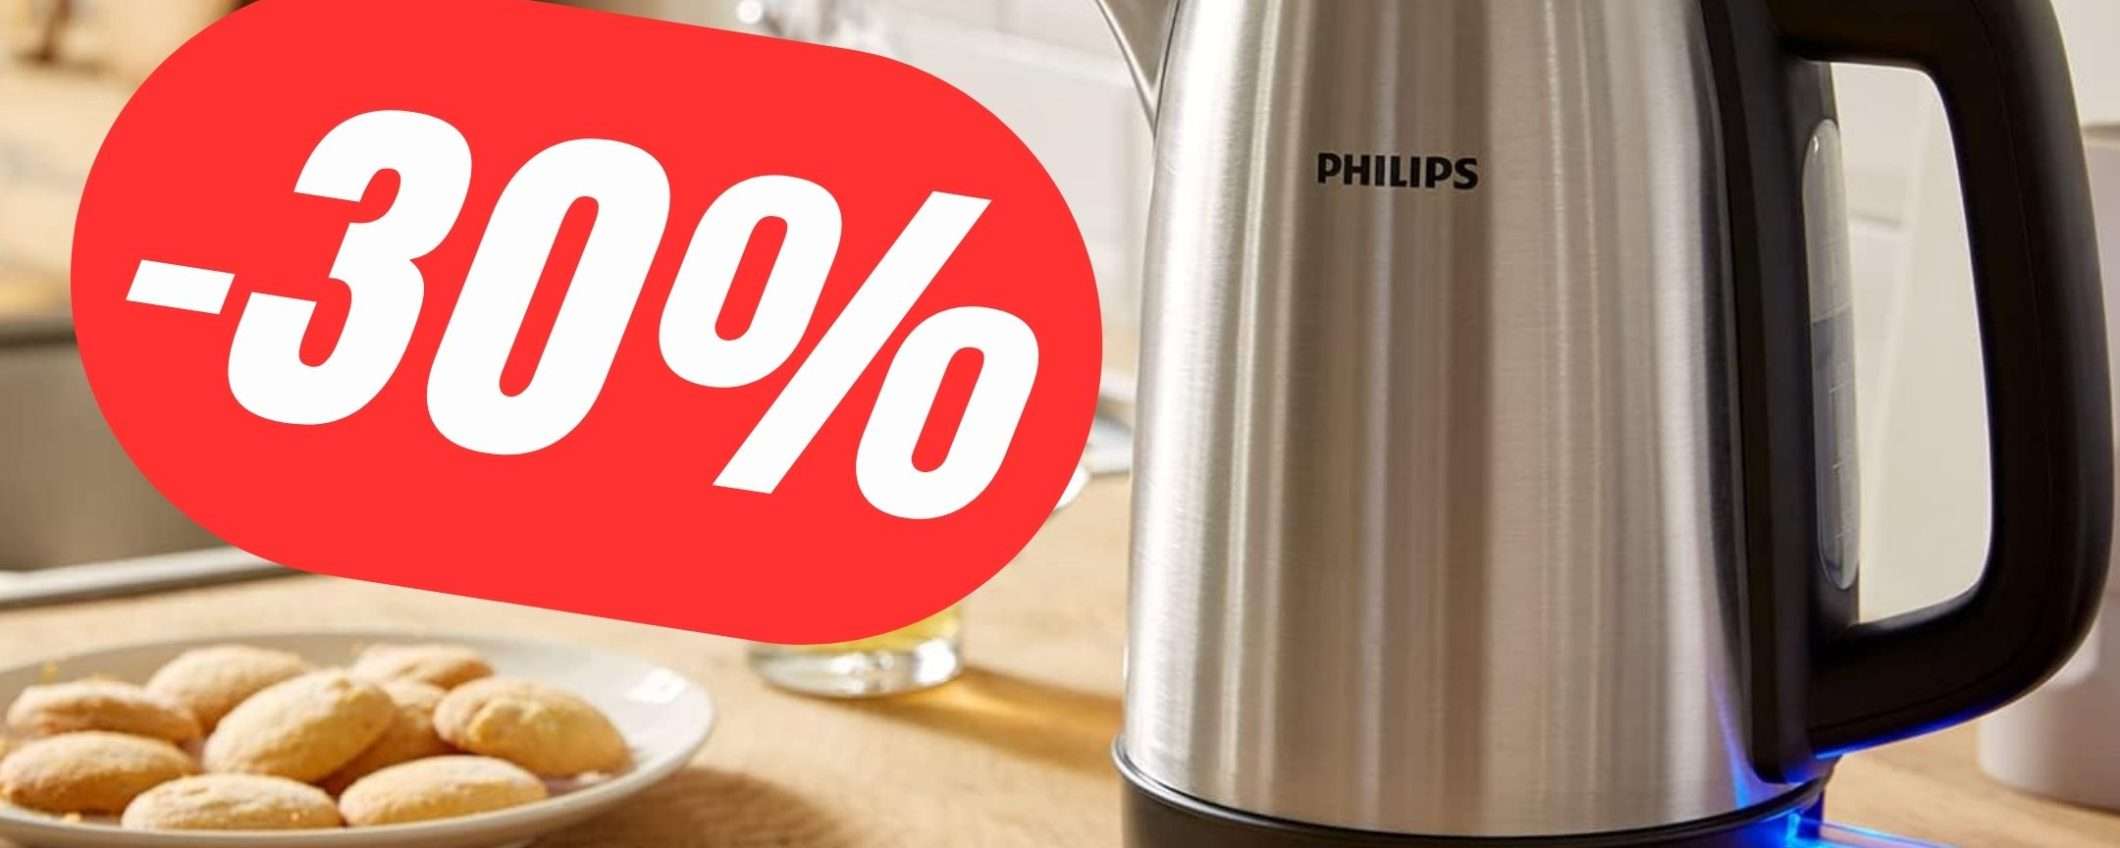 Il Bollitore Elettrico di Philips è scontato del 30%!